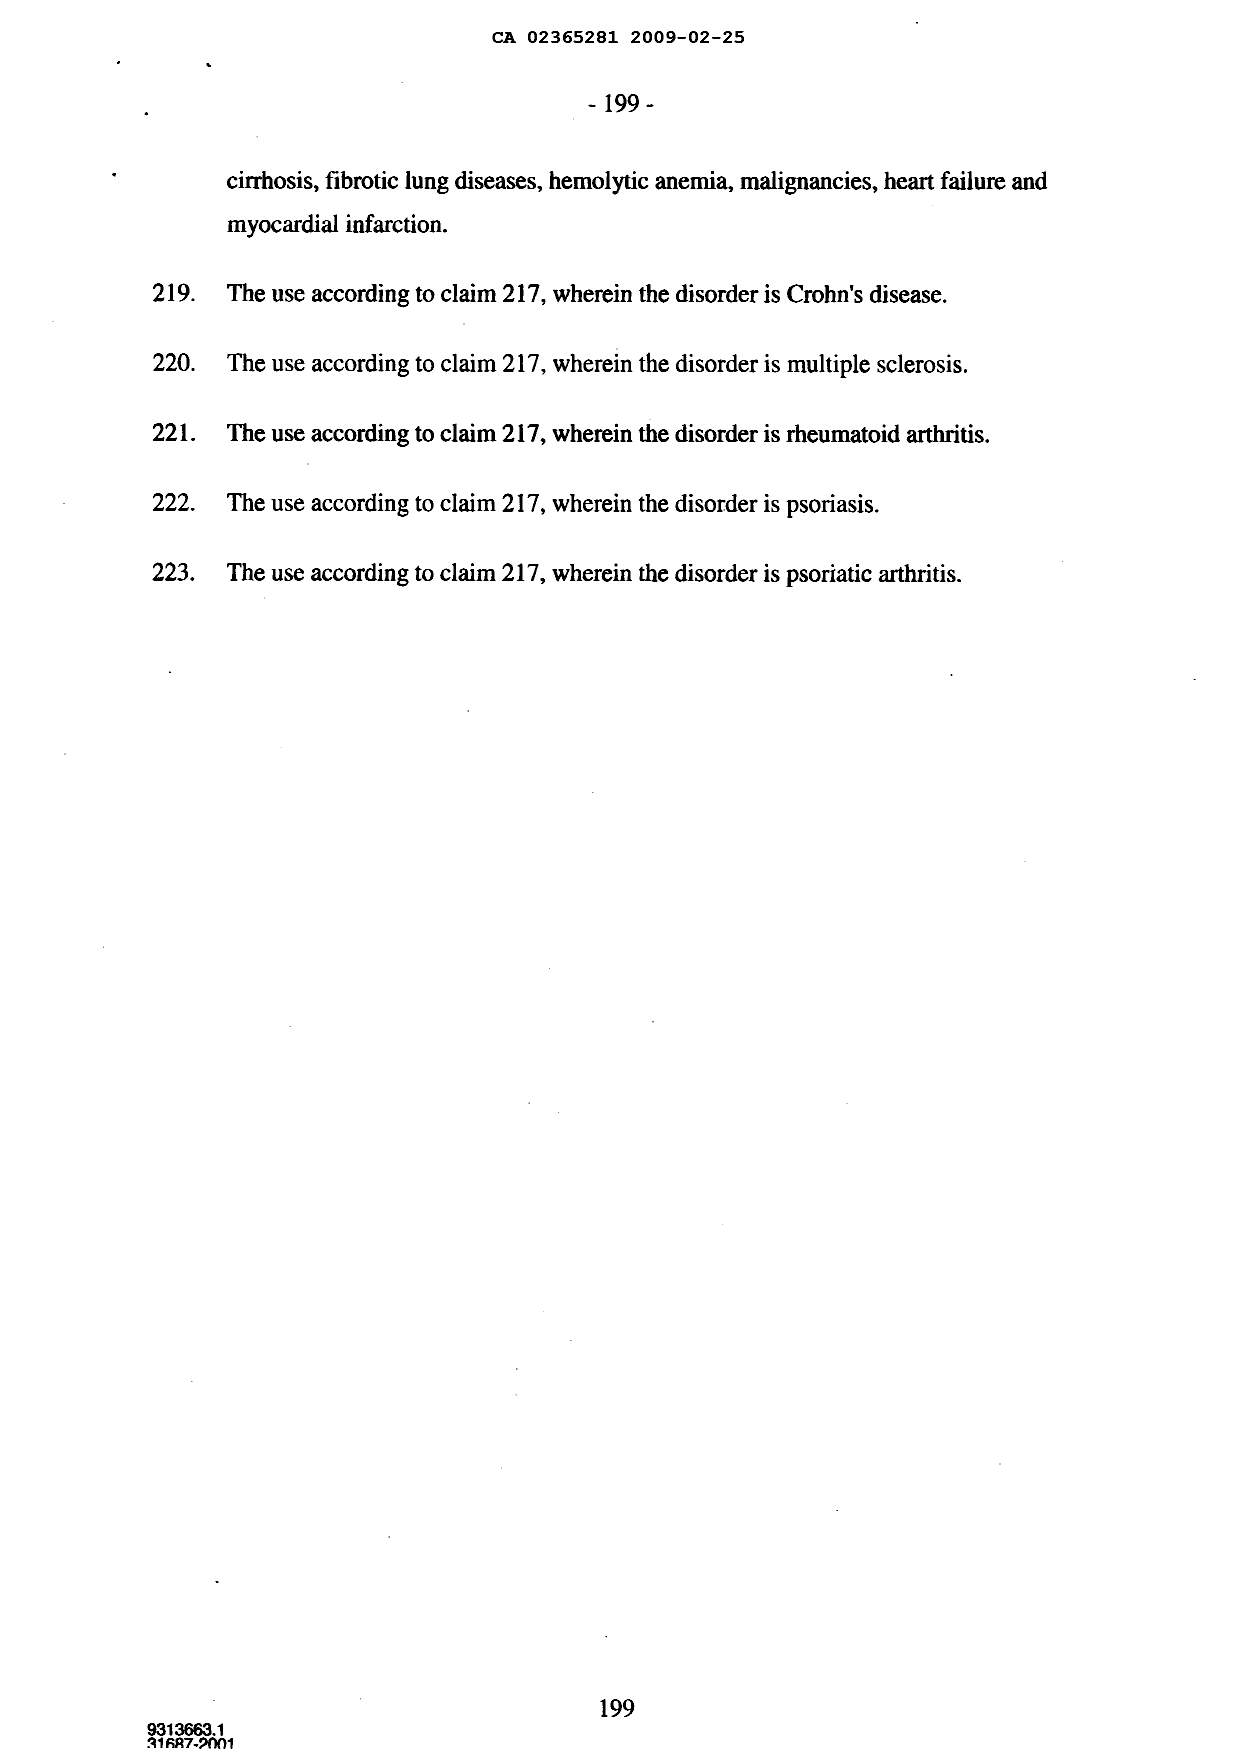 Document de brevet canadien 2365281. Poursuite-Amendment 20081225. Image 69 de 69